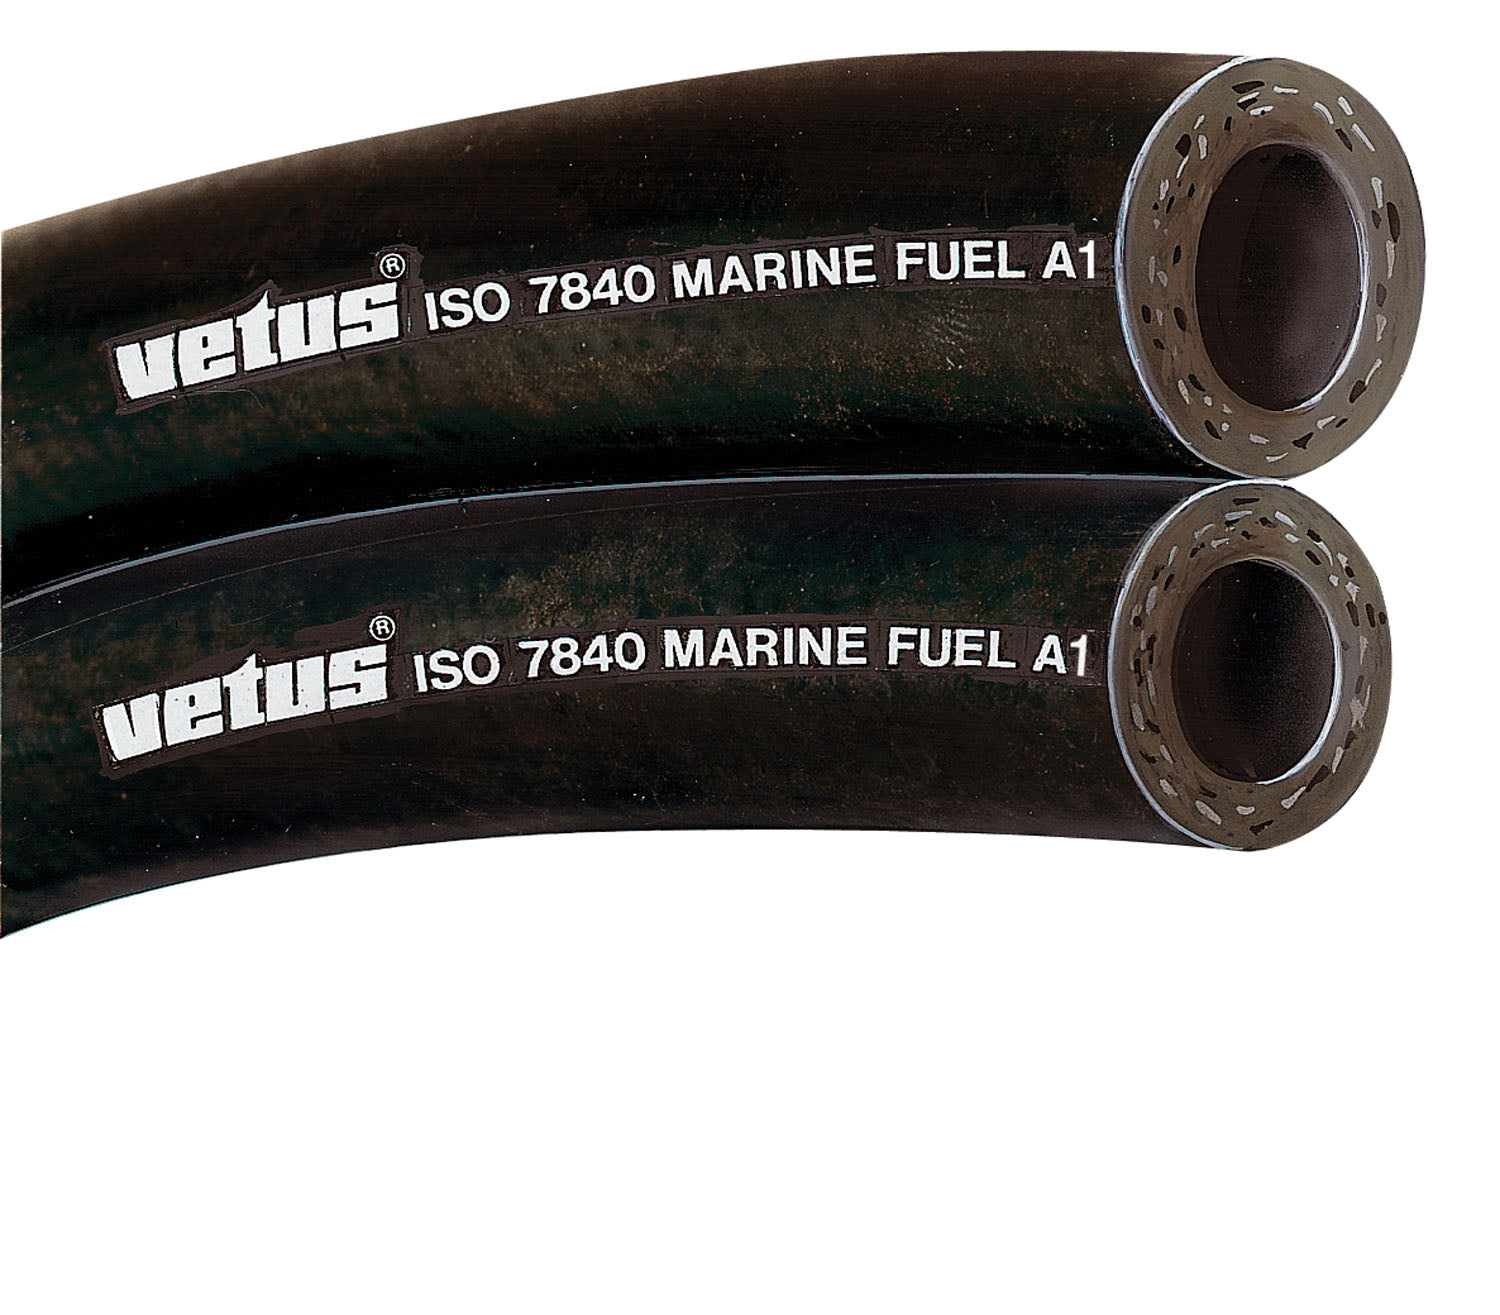 Vetus FUHOSE10A - Fuel hose 10x18mm iso7840-marine fuel A1